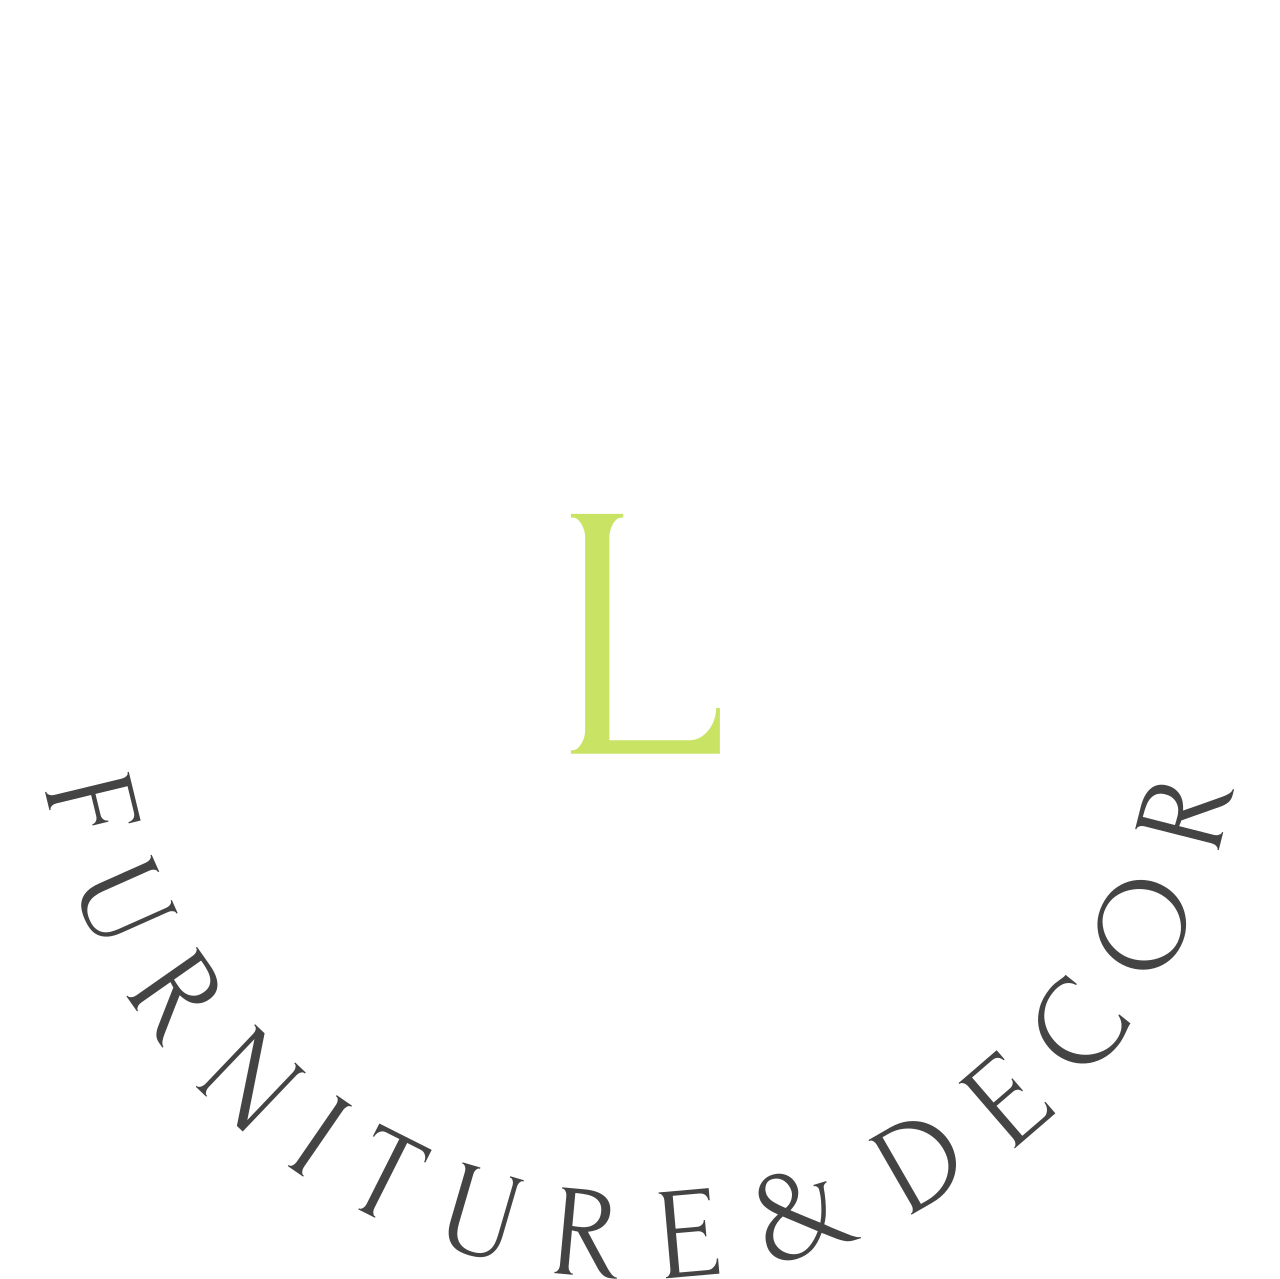 LINE & COLOR's web page